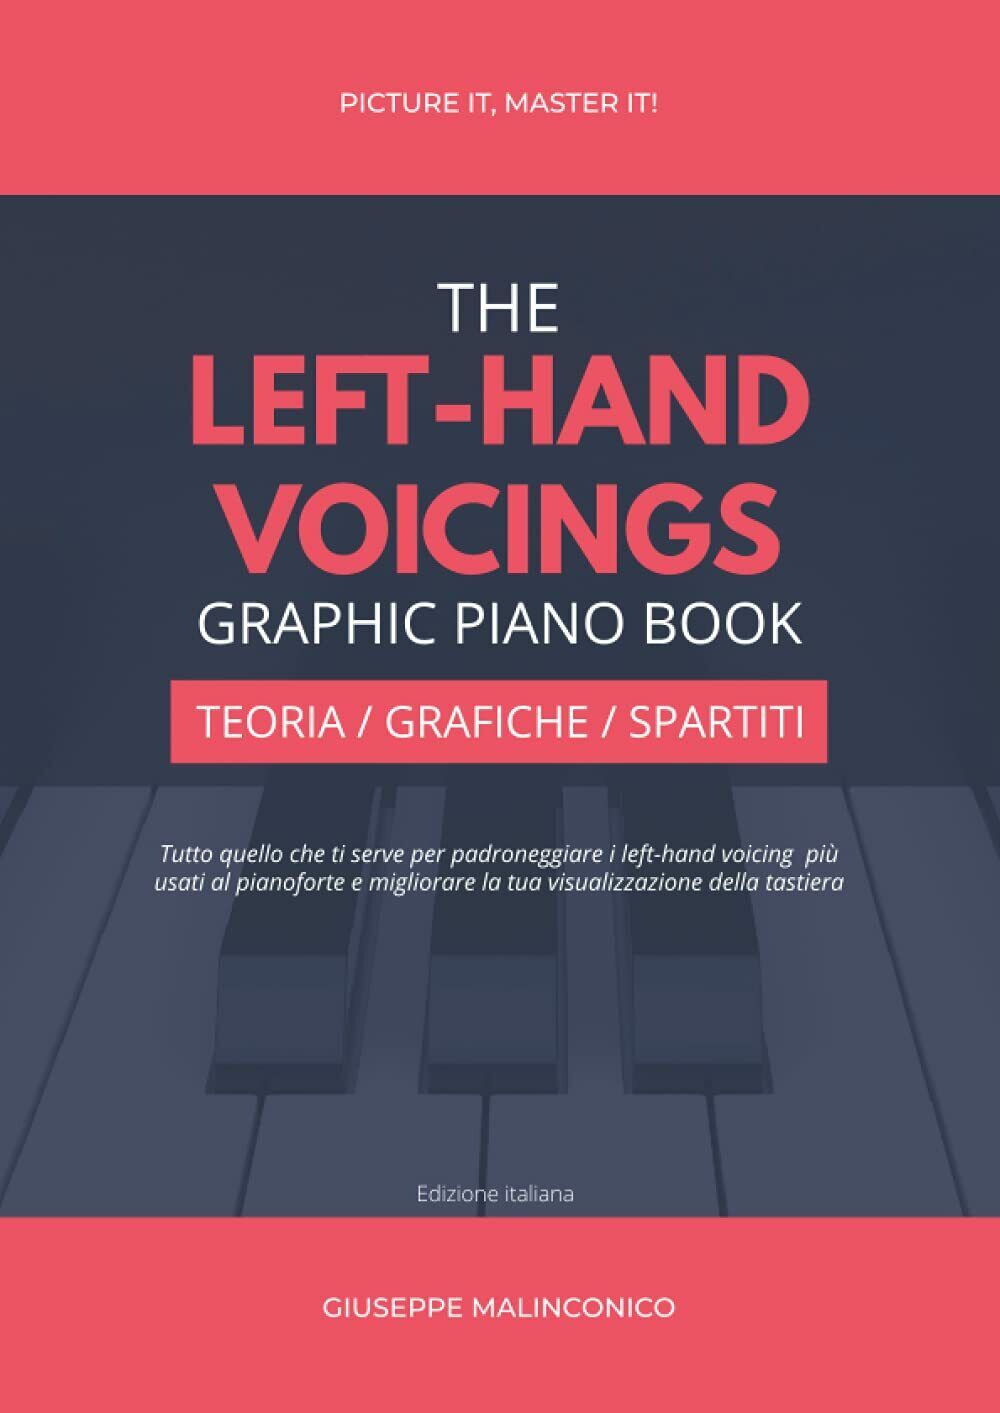 The Left-Hand Voicings Graphic Piano Book: Teoria, Grafiche e Spartiti di Giusep